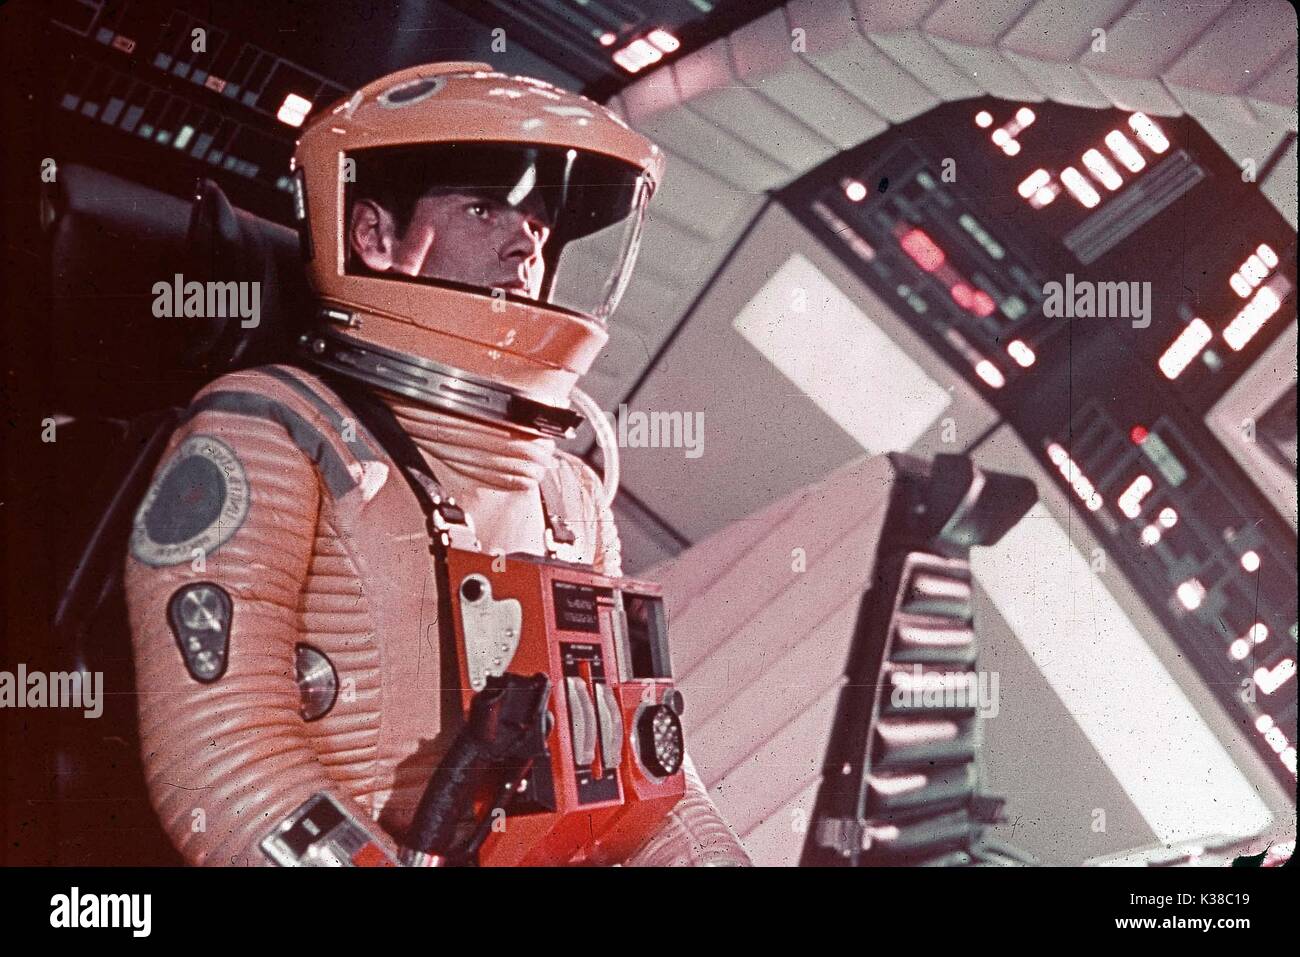 2001: Odissea nello spazio data: 1968 Foto Stock